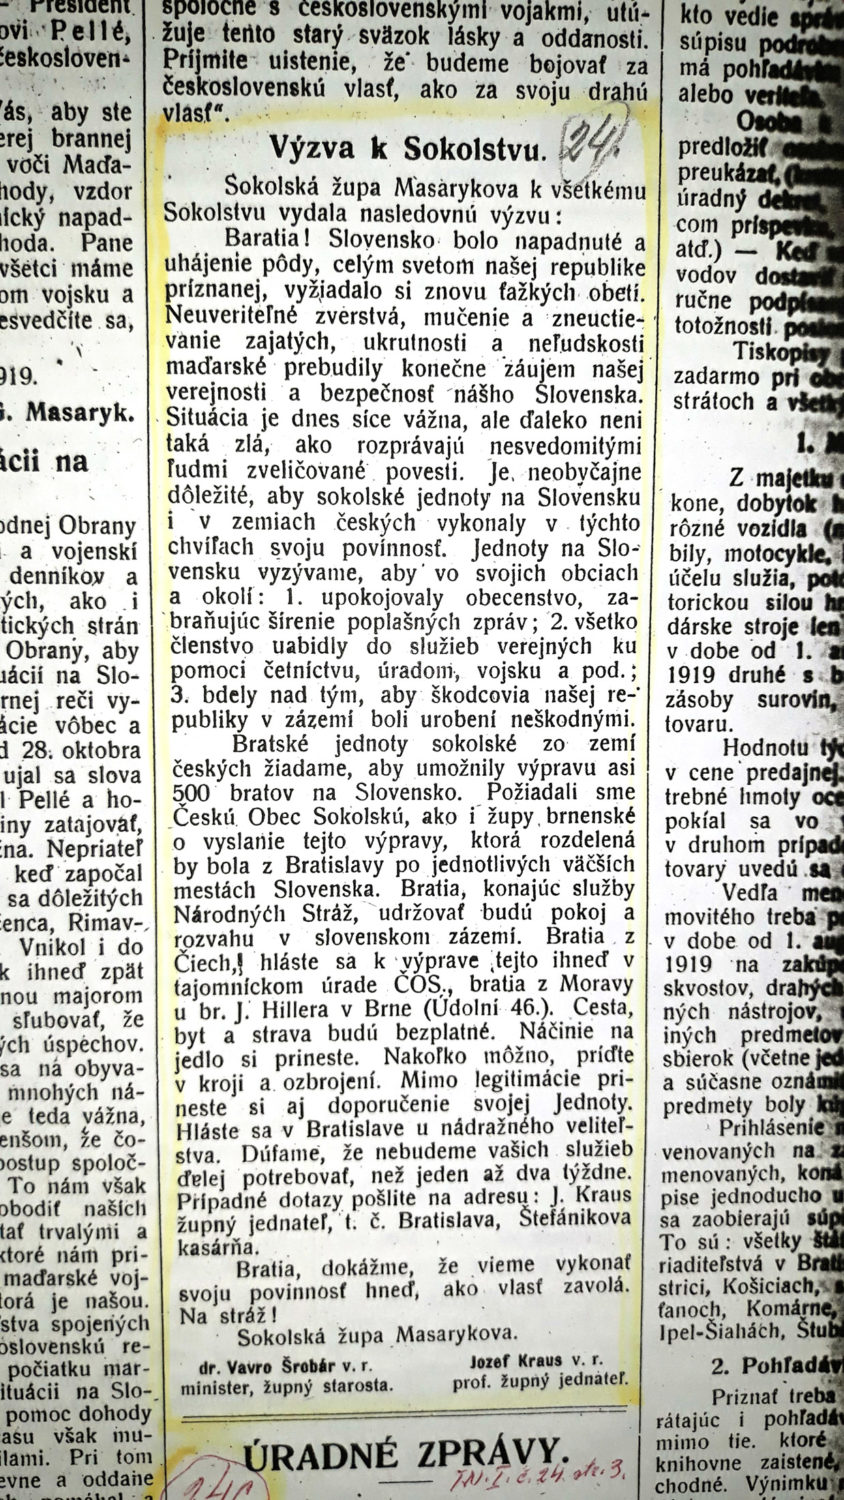 Výzva Sokolskej župy Masarykovej v súvislosti s napadnutím Slovenska maďarskou armádou v Trenč. Novinách.